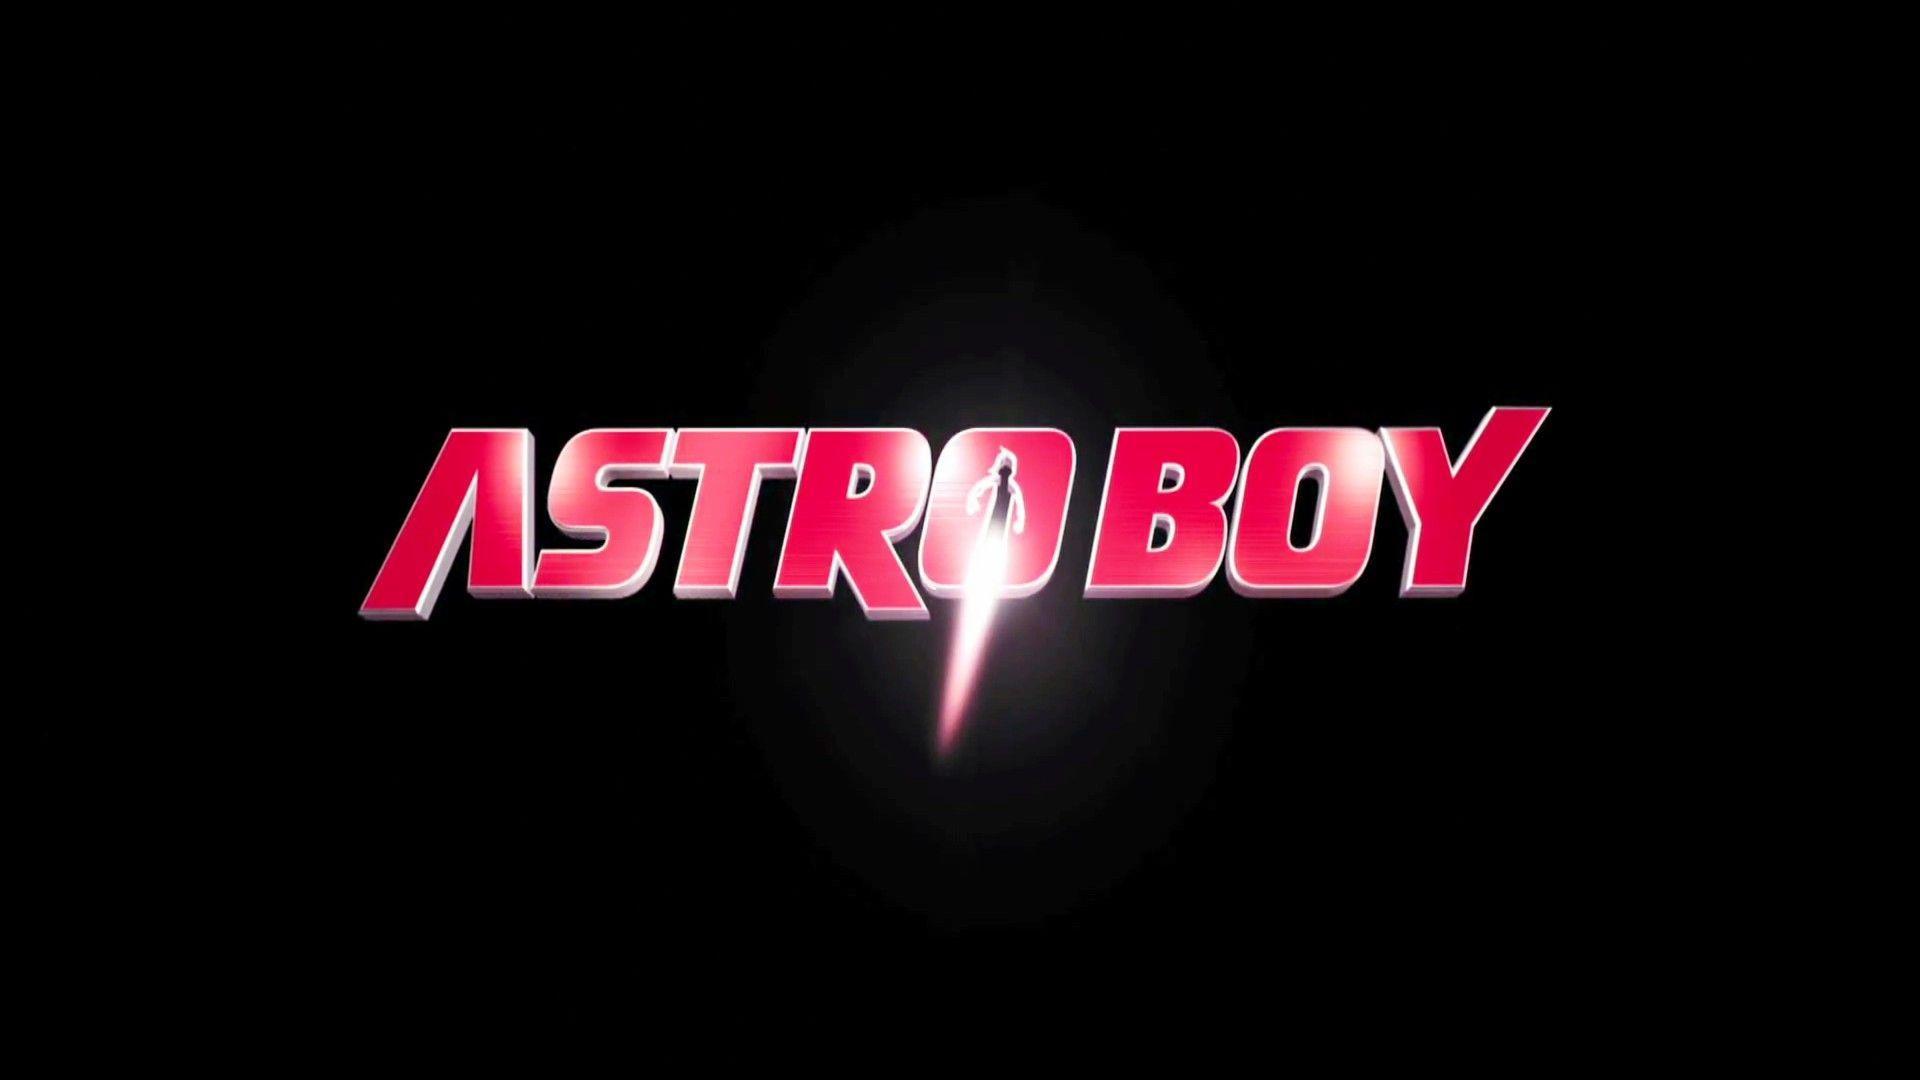 HD Astro Boy Wallpaper